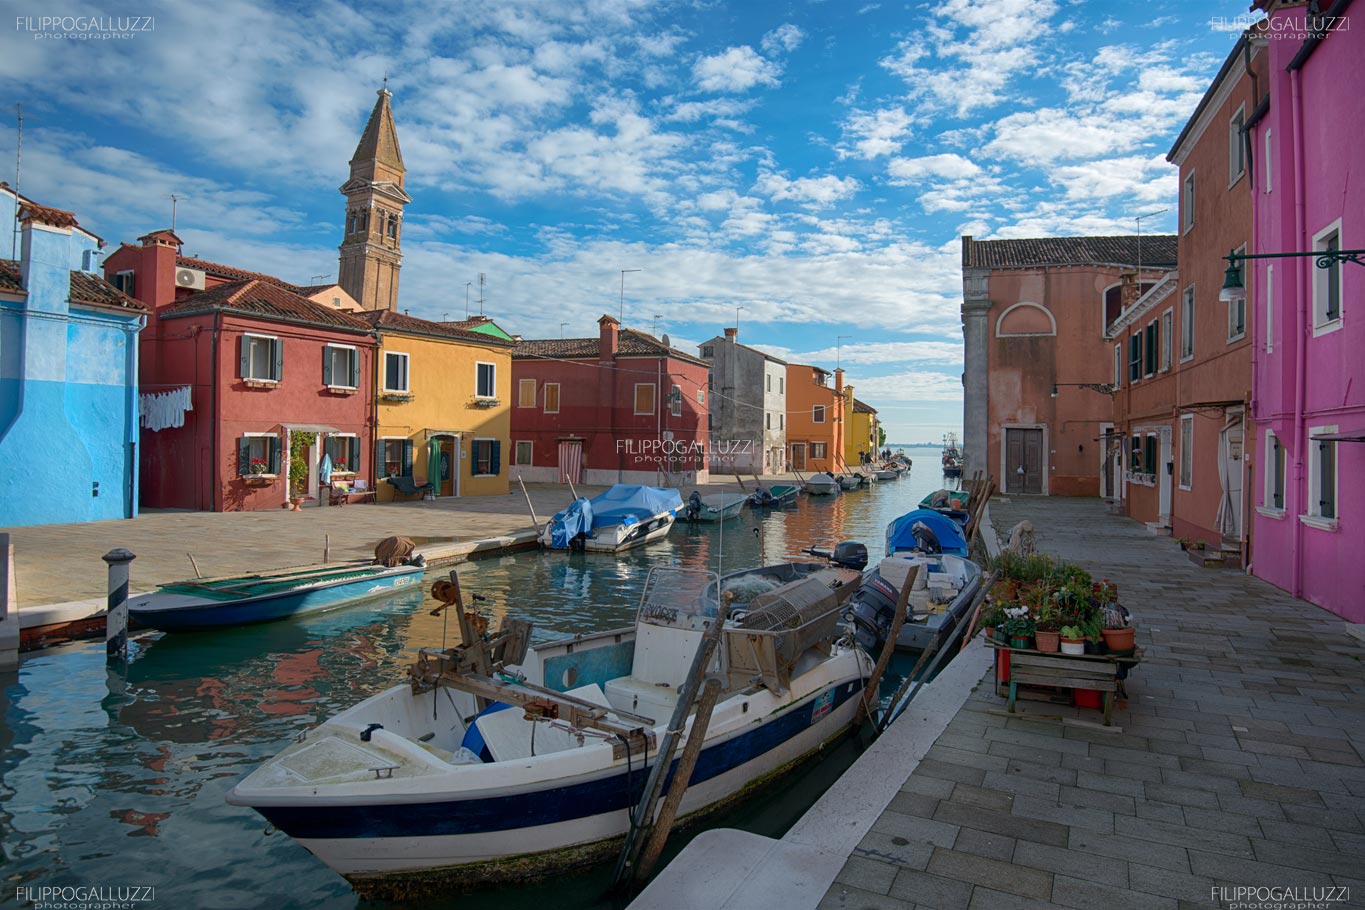 Venezia, gl iincredibili colori di Burano